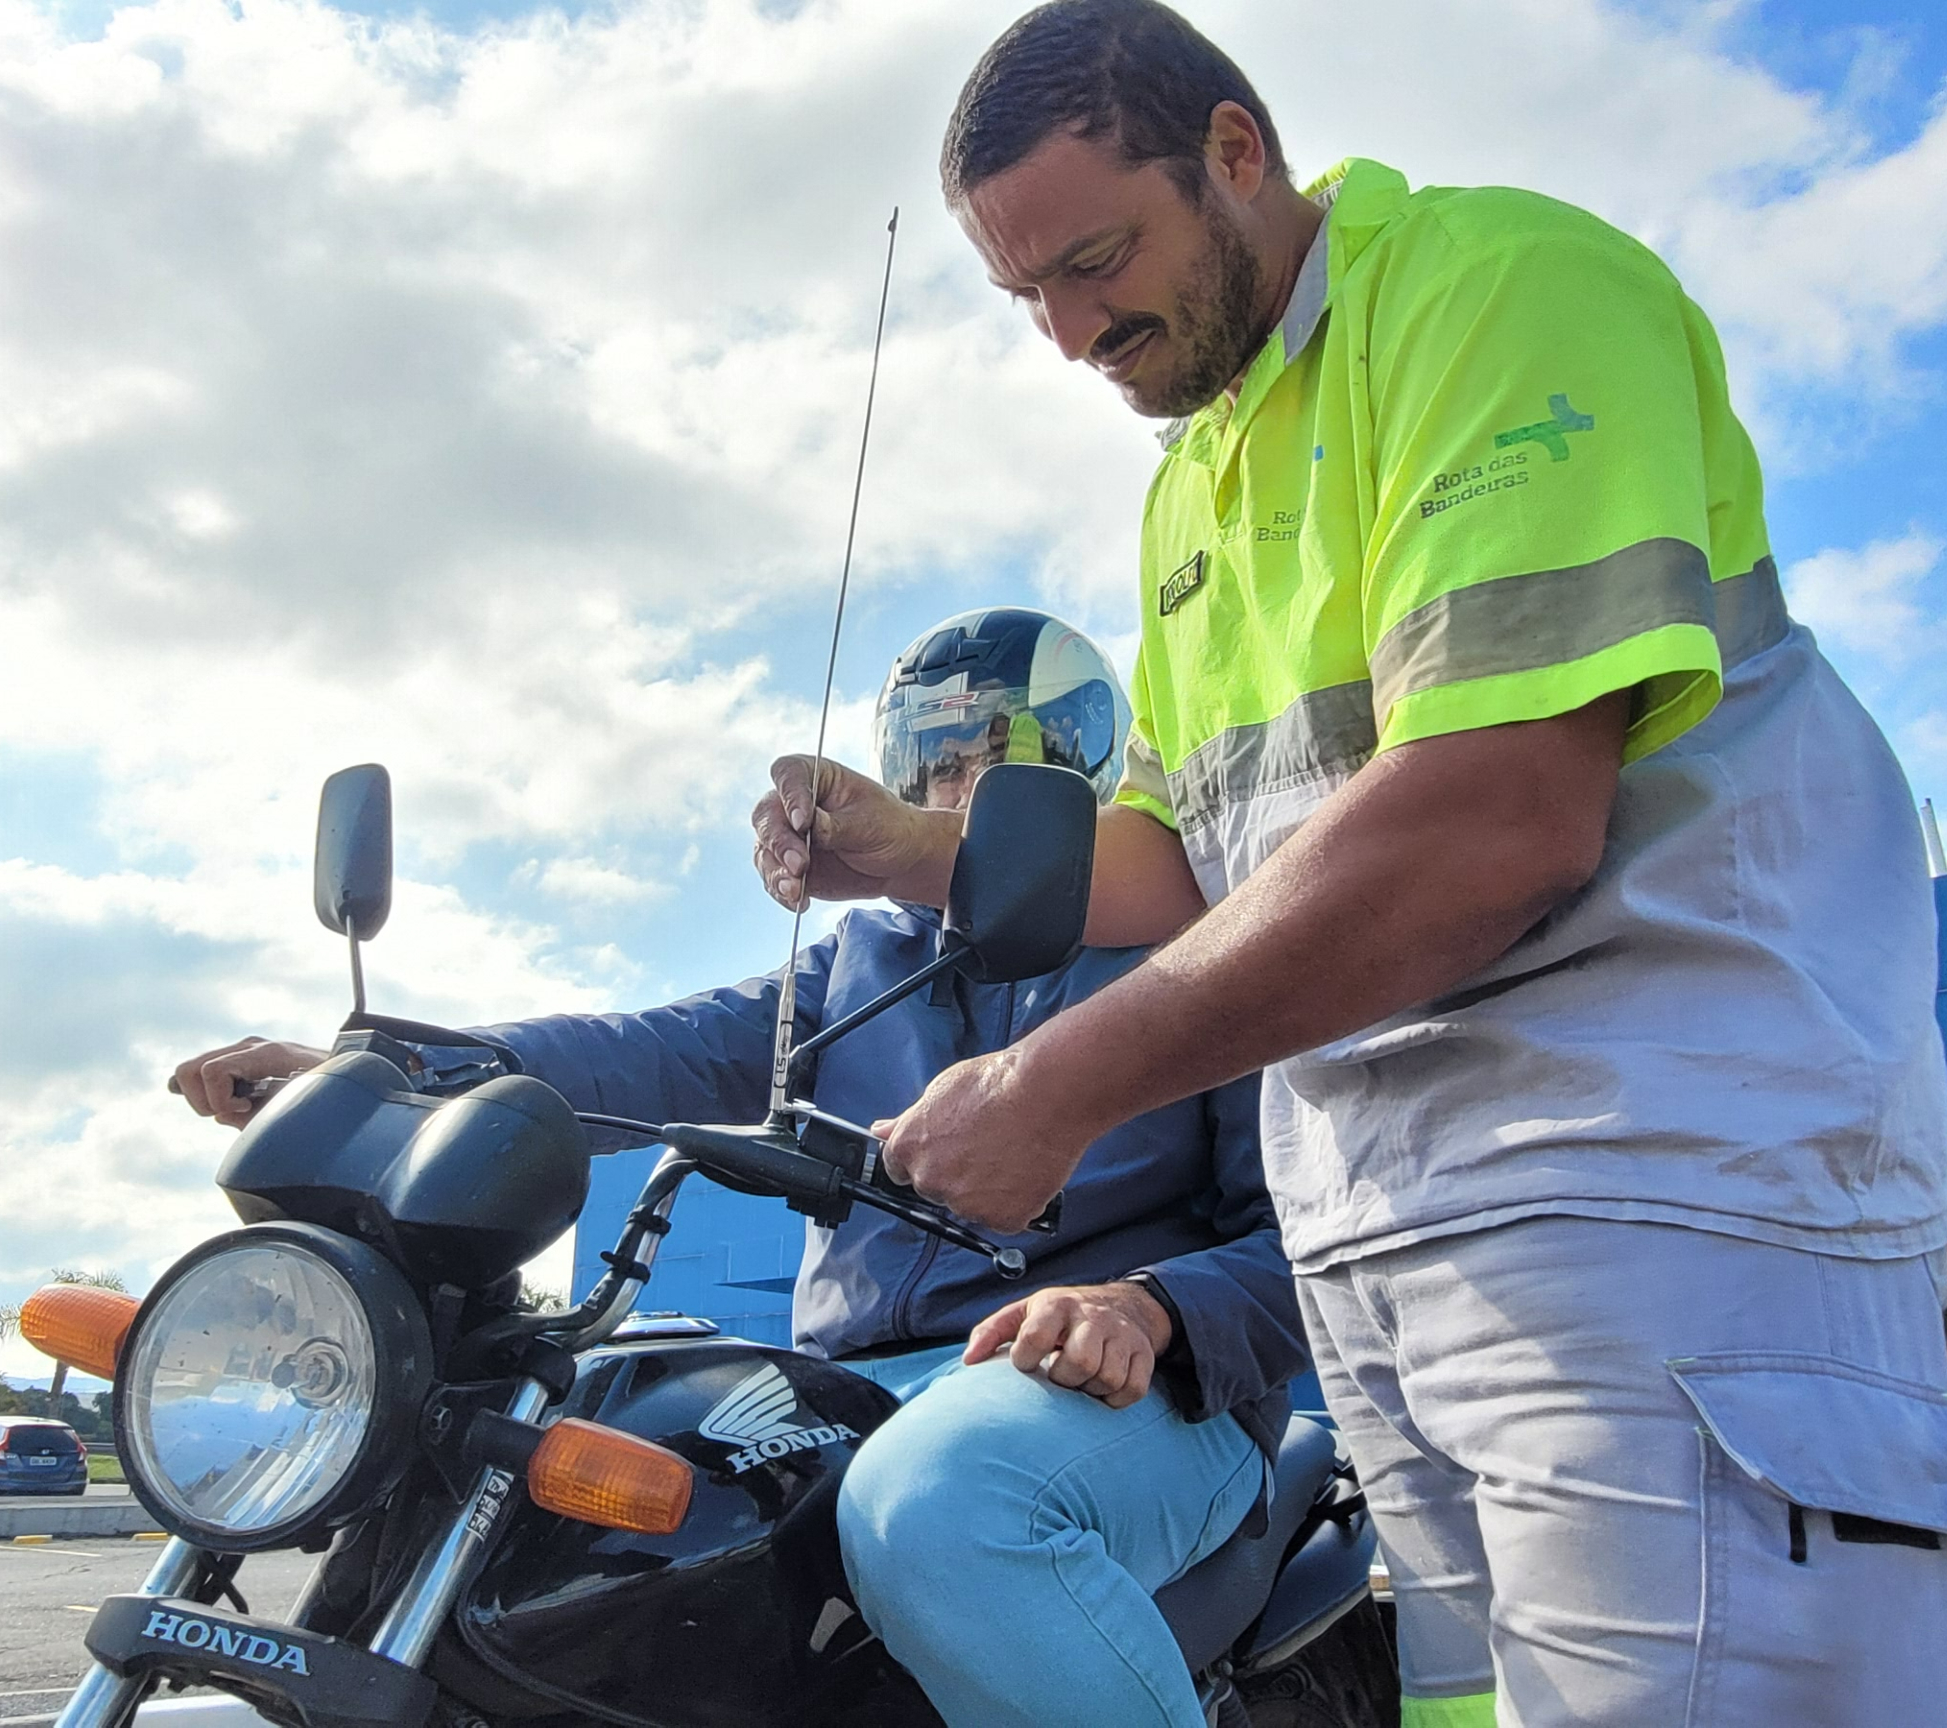 Rota das Bandeiras faz ação com distribuição de itens de segurança a motociclistas no Parque da Cidade, em Jundiaí